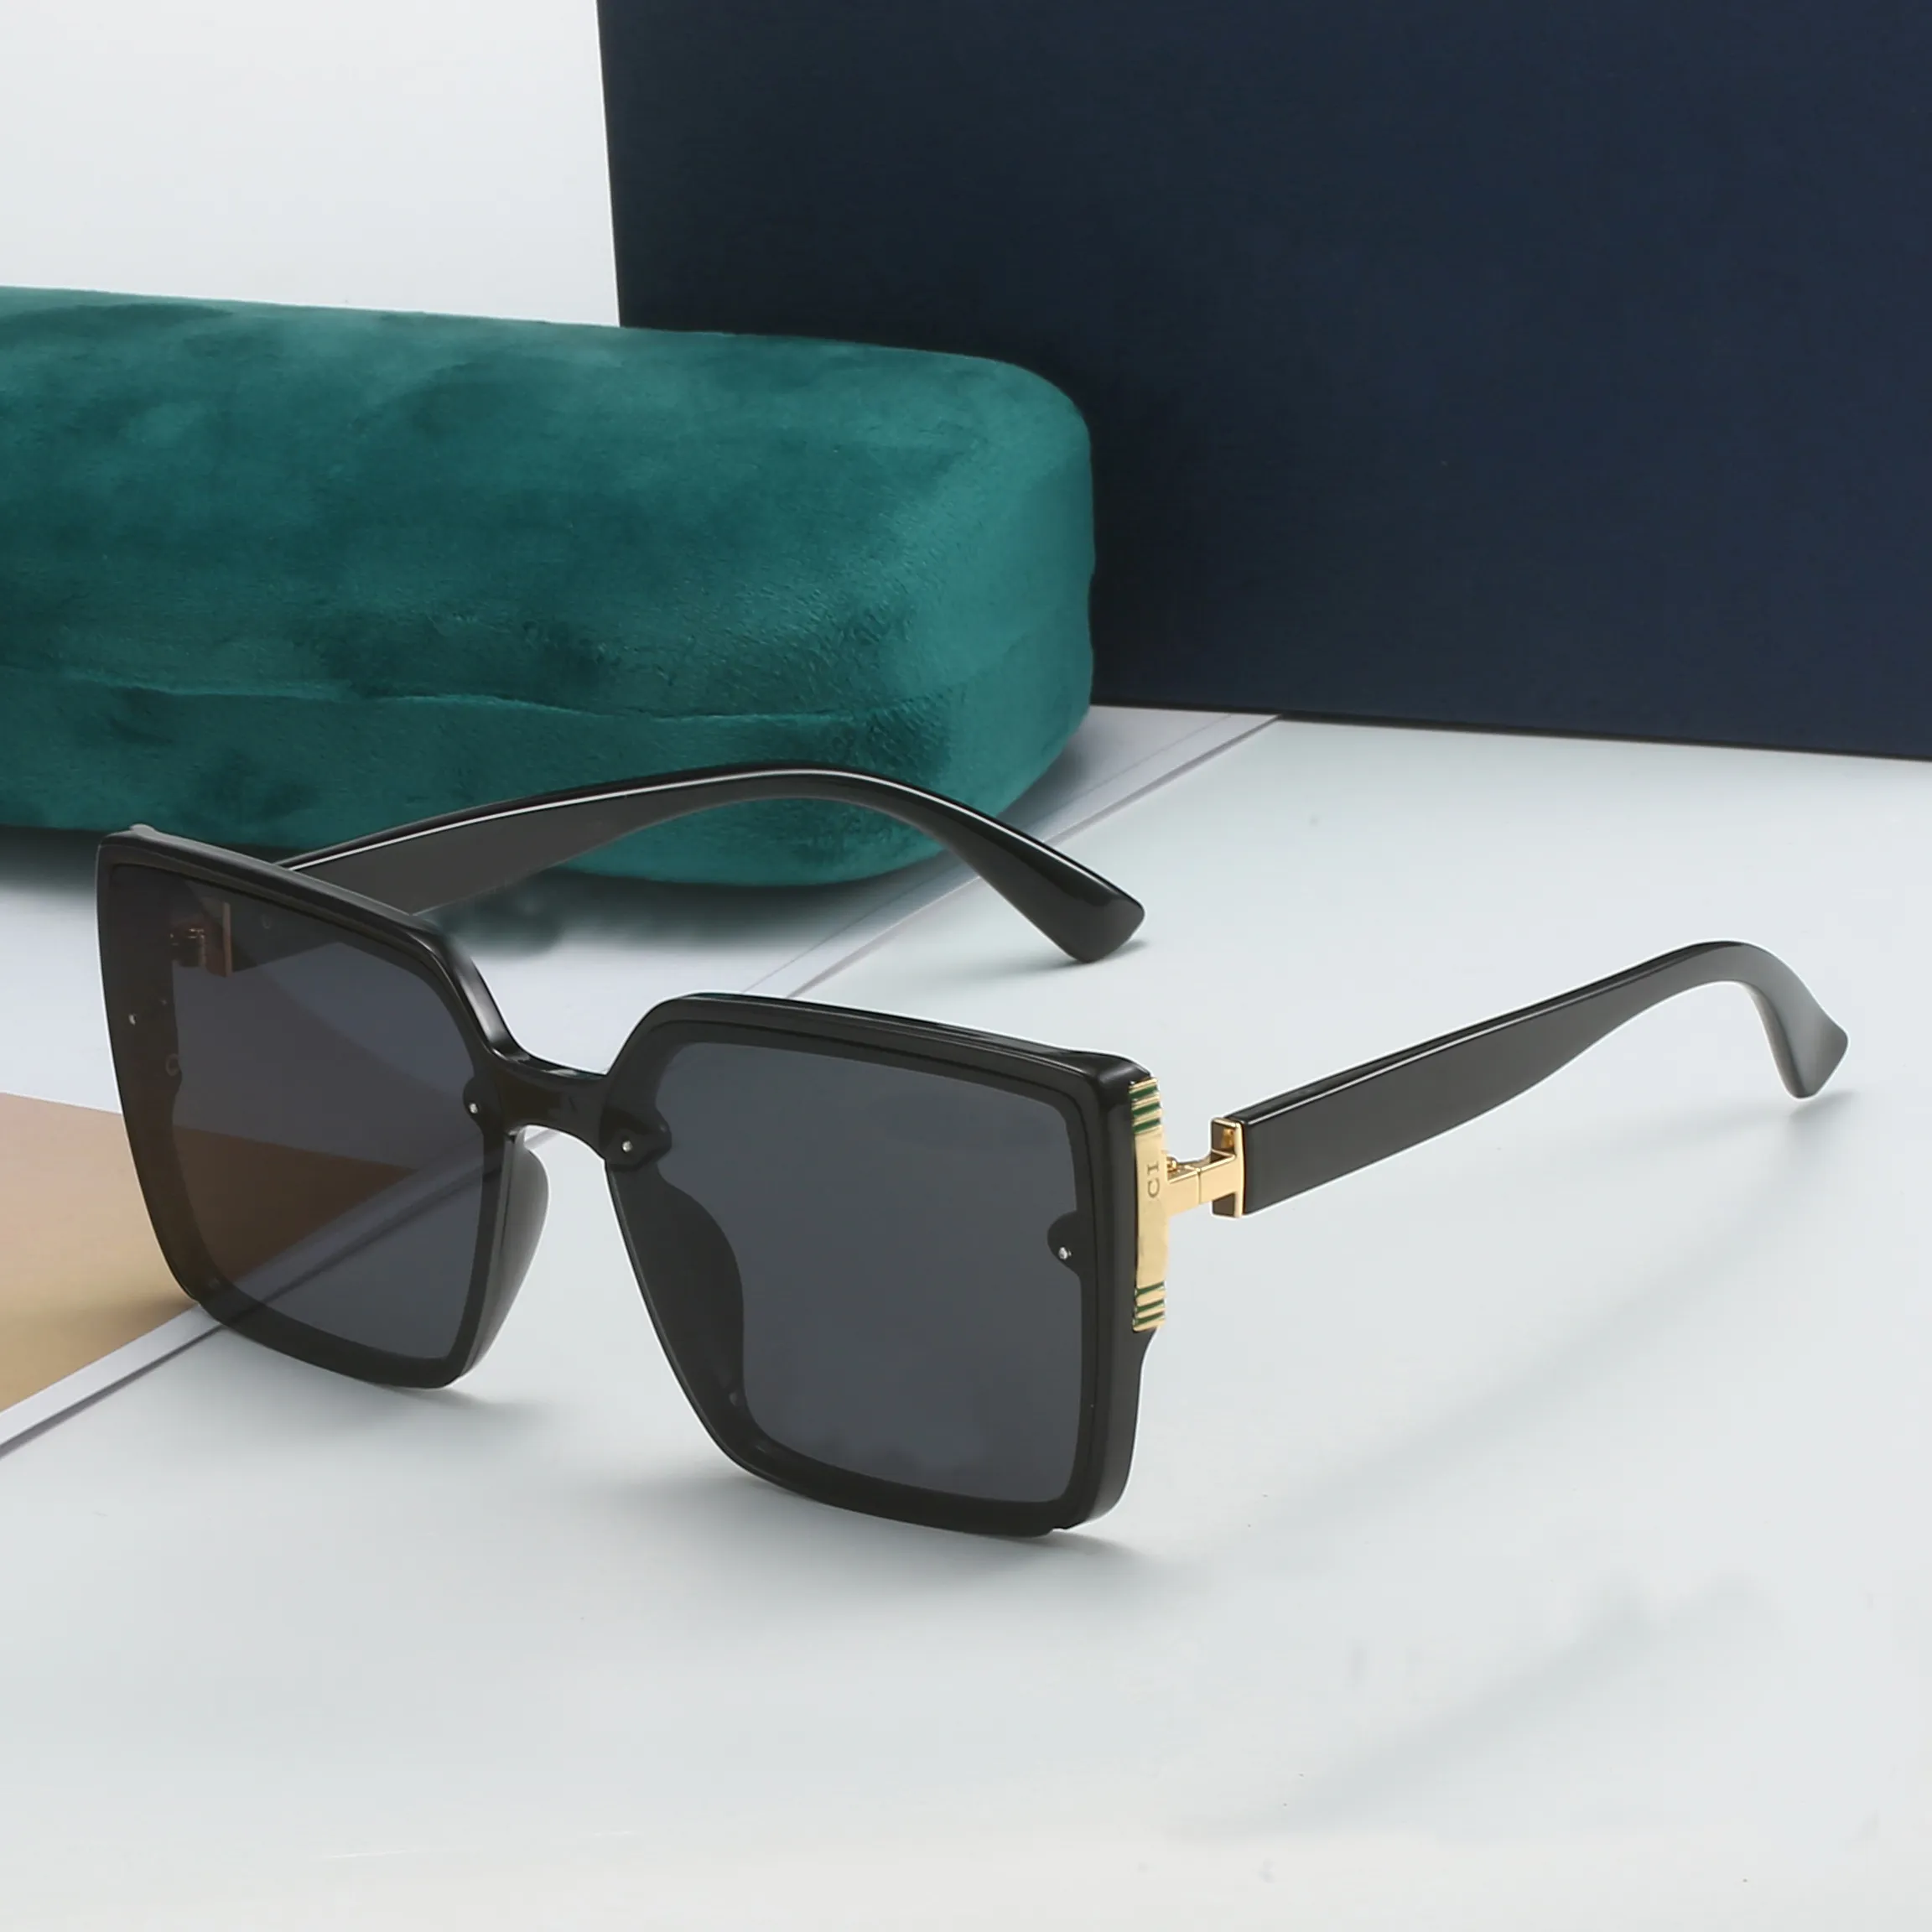 Выделяйтесь с необычными очками Уникальные и стильные солнцезащитные очки для любого случая